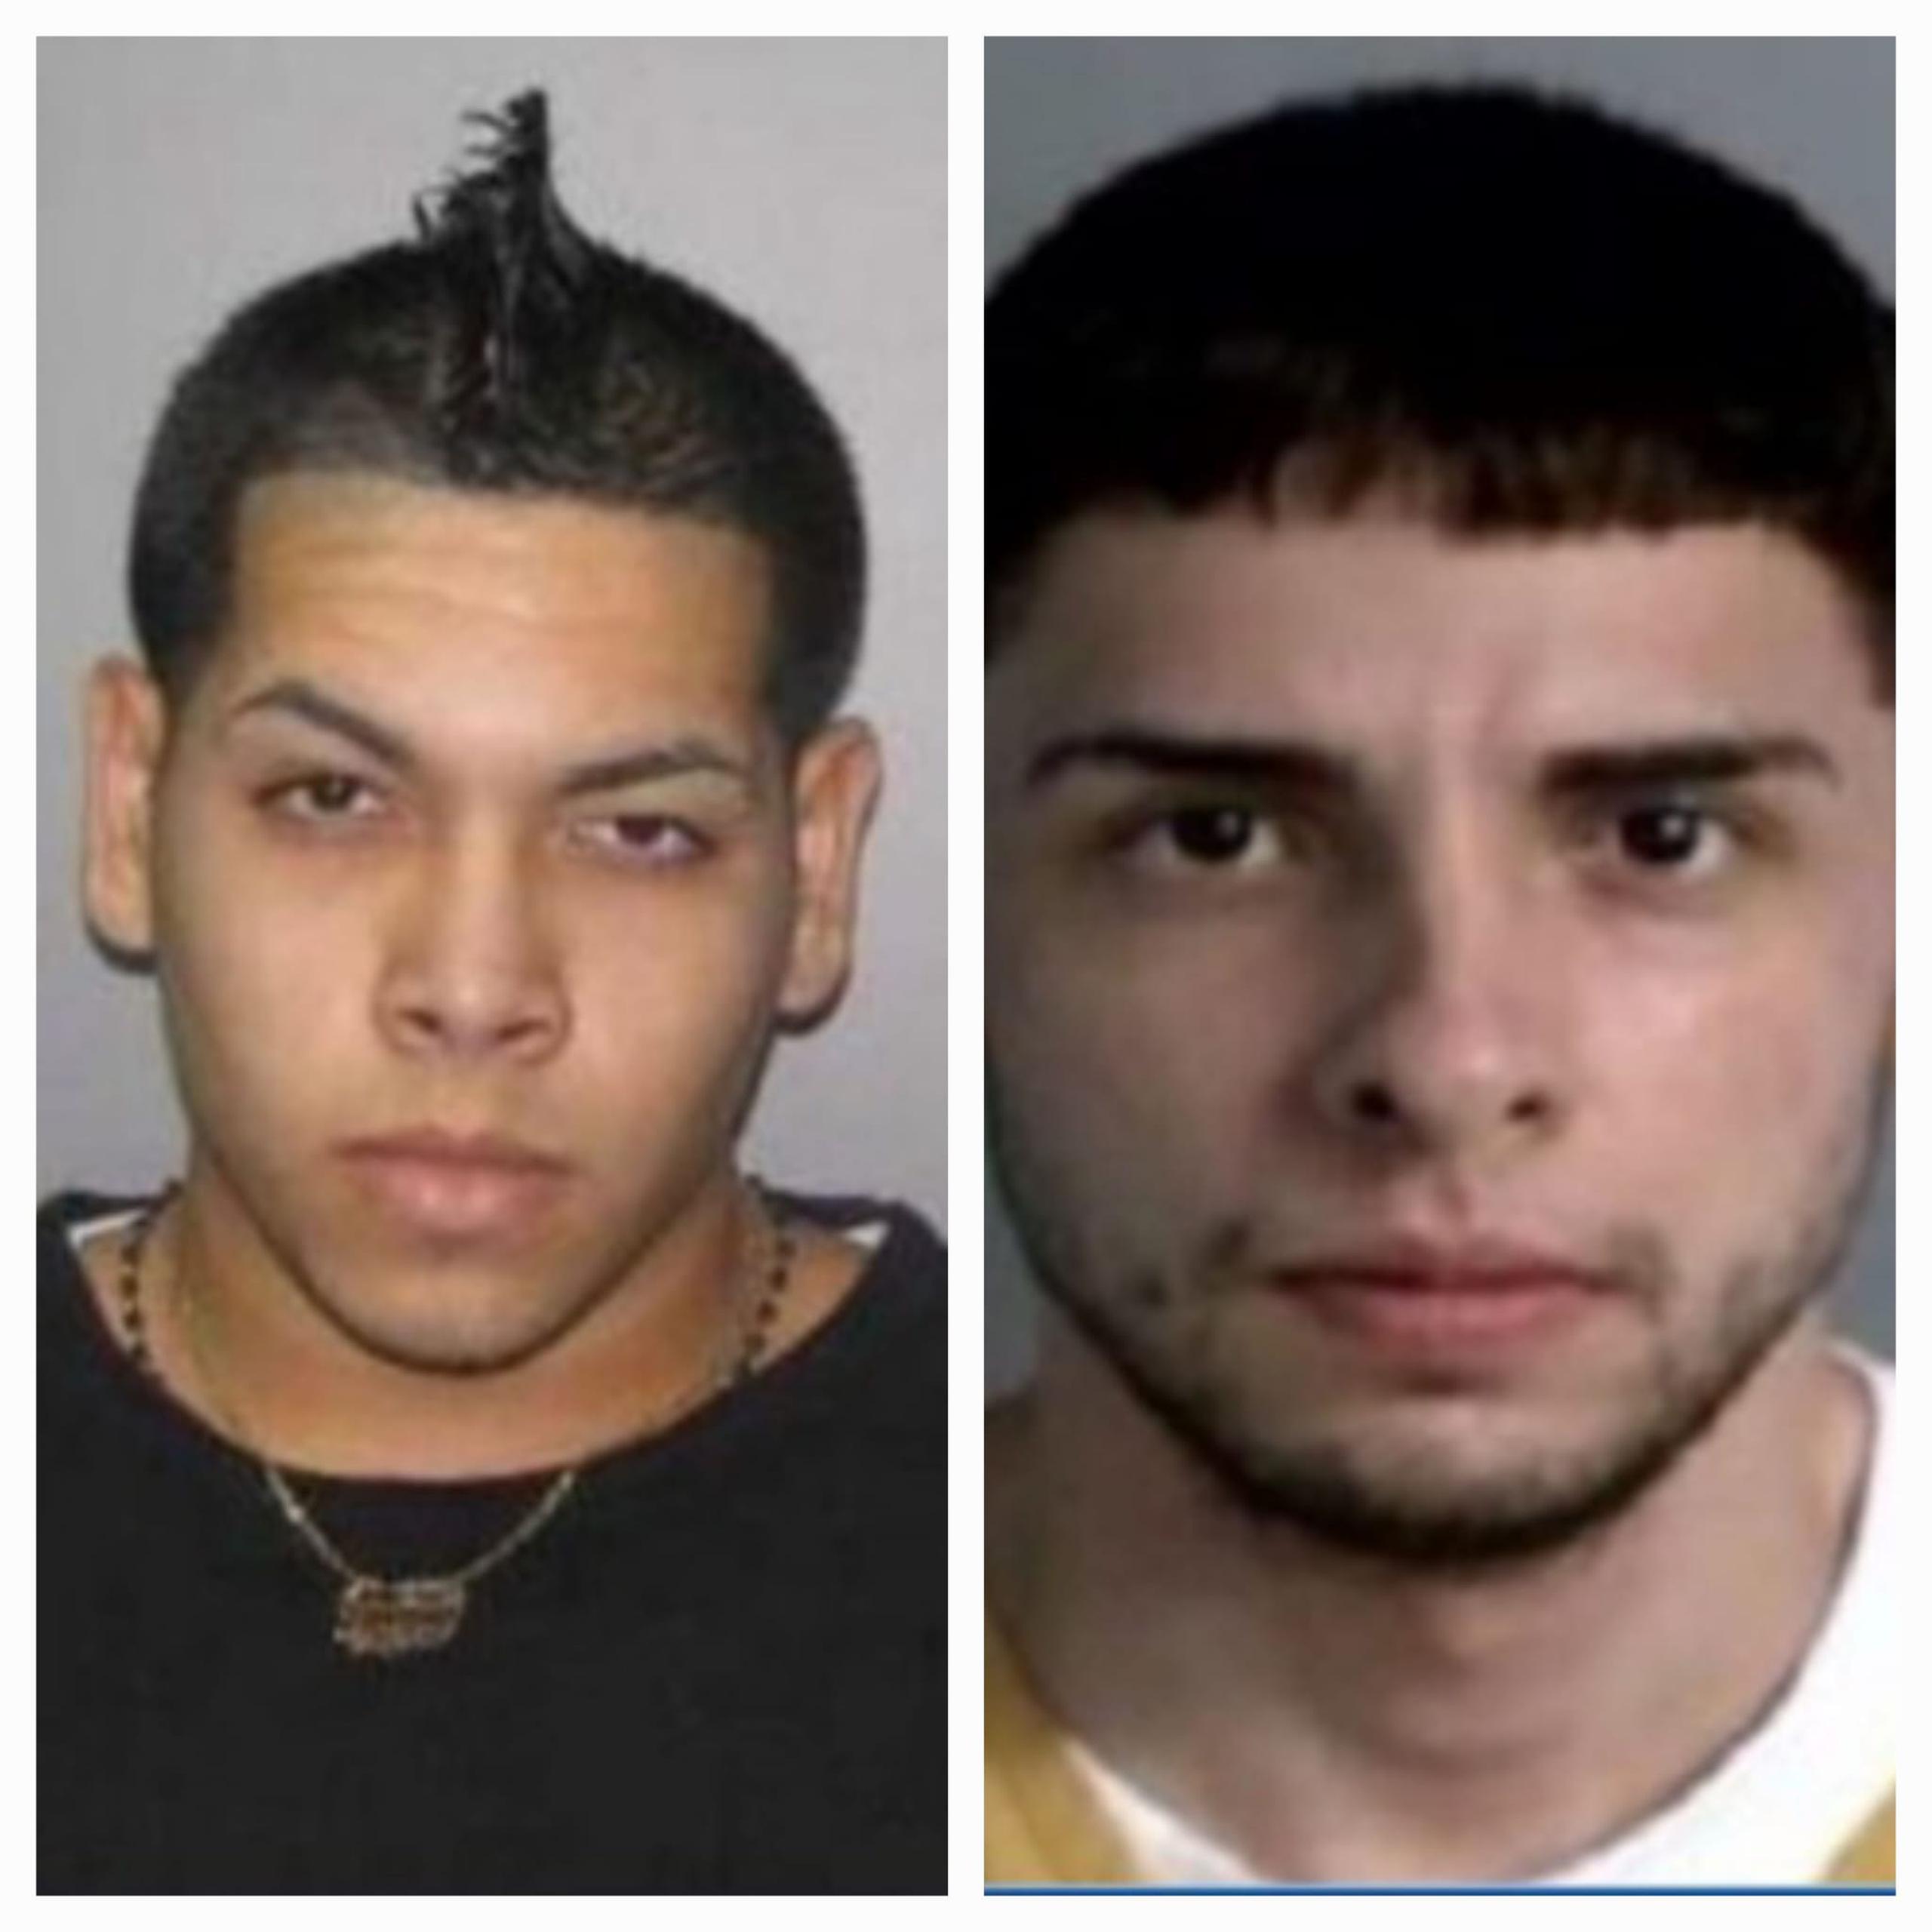 Se busca a los fugitivos Emmanuel Cintrón Fontánez alías “Gordo” y José Manuel Rodríguez Torres apodado “La J”, quienes figuran en la lista de Los Más Buscados, por cargos de asesinato.